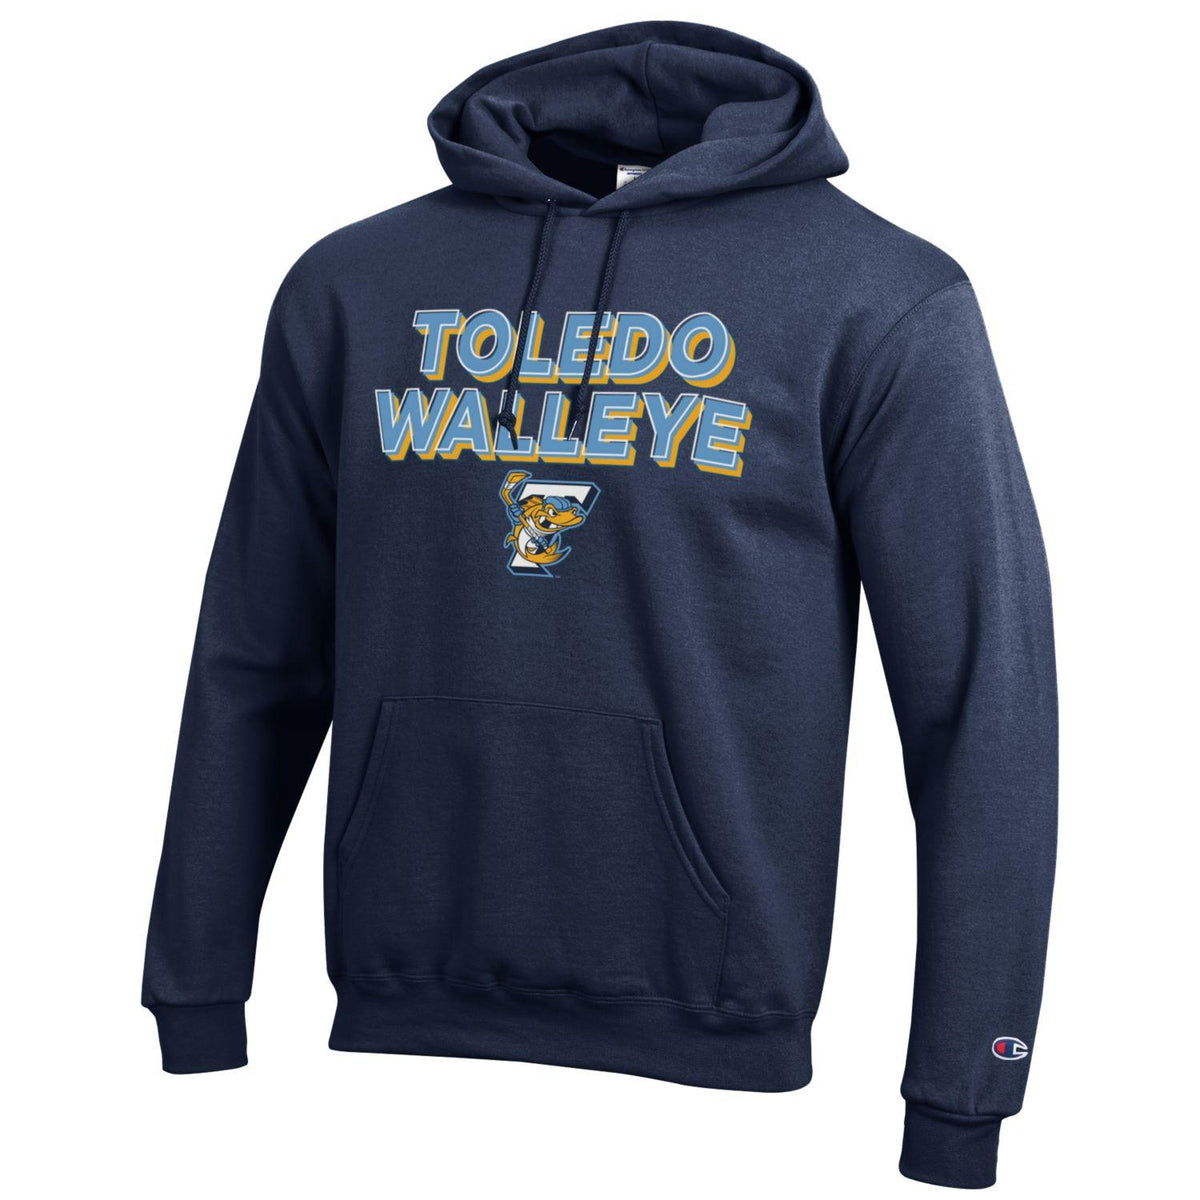 Walleye Walleye Hunter Two-Sided Hooded Sweatshirt